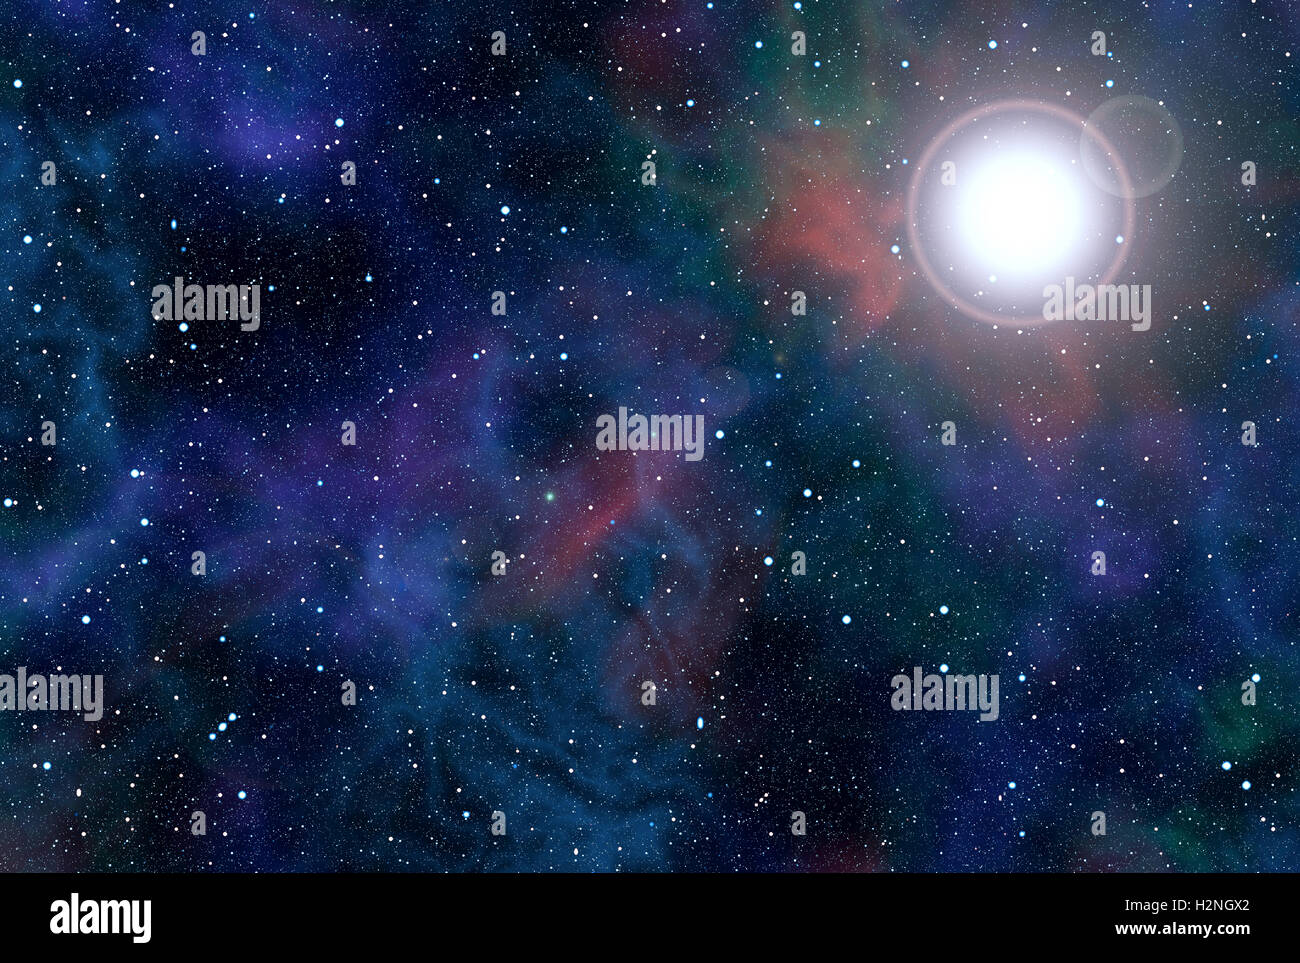 Alta risoluzione sfondo astratto con spazio cosmico riempito dalle stelle. Stella luminosa in stretta prossimità e nebulose colorate Foto Stock